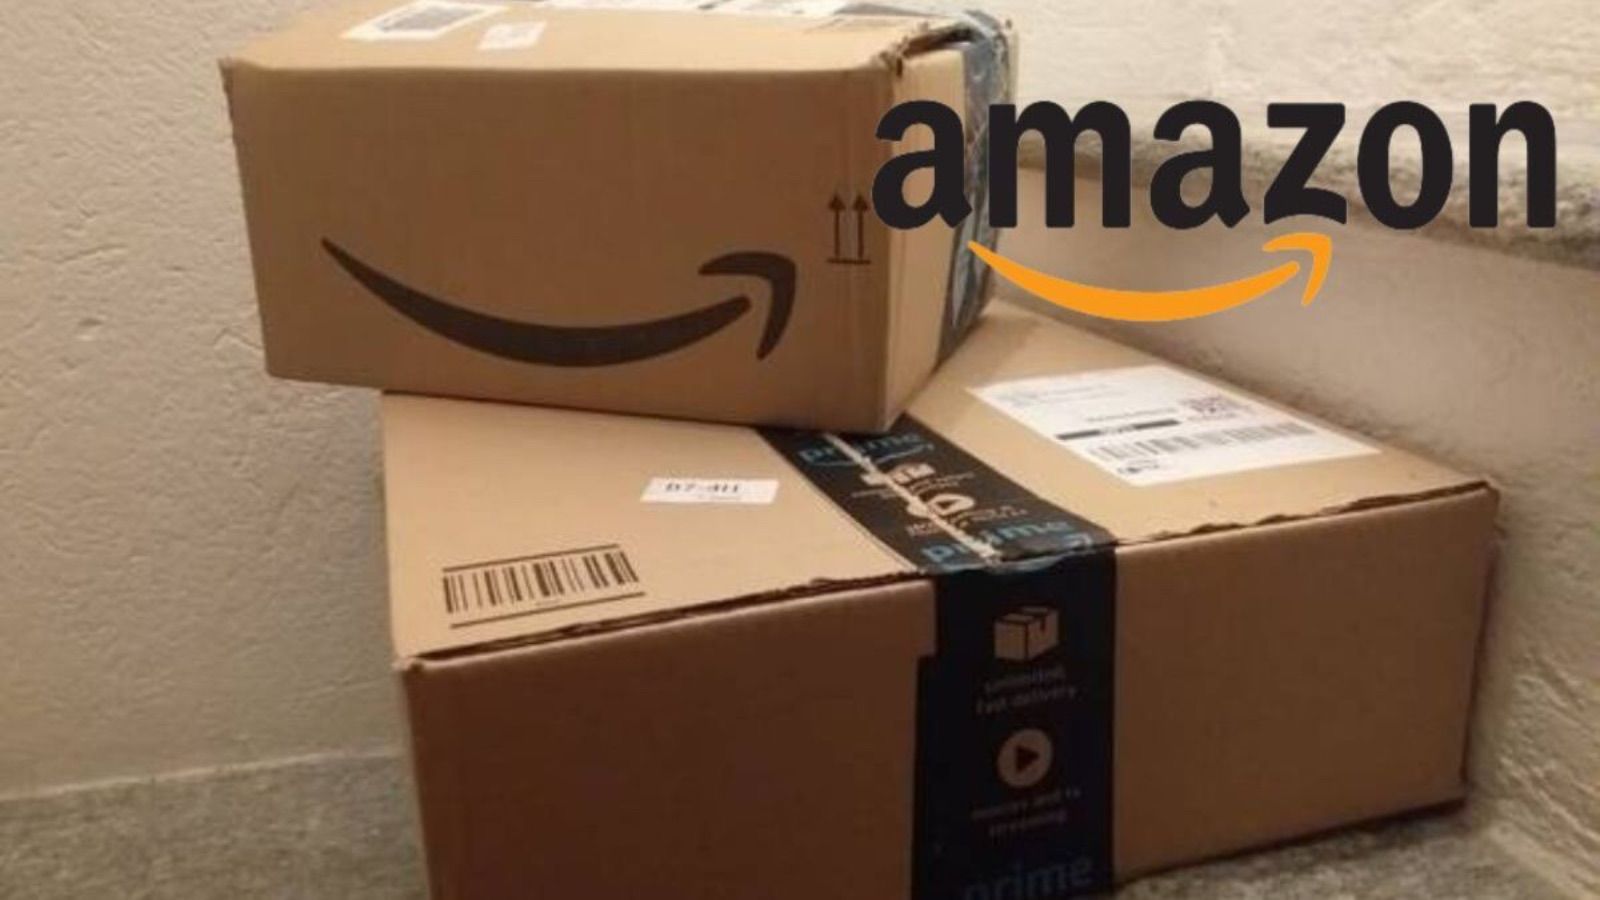 Amazon FOLLE oggi, agosto pieno di offerte all'80% di sconto